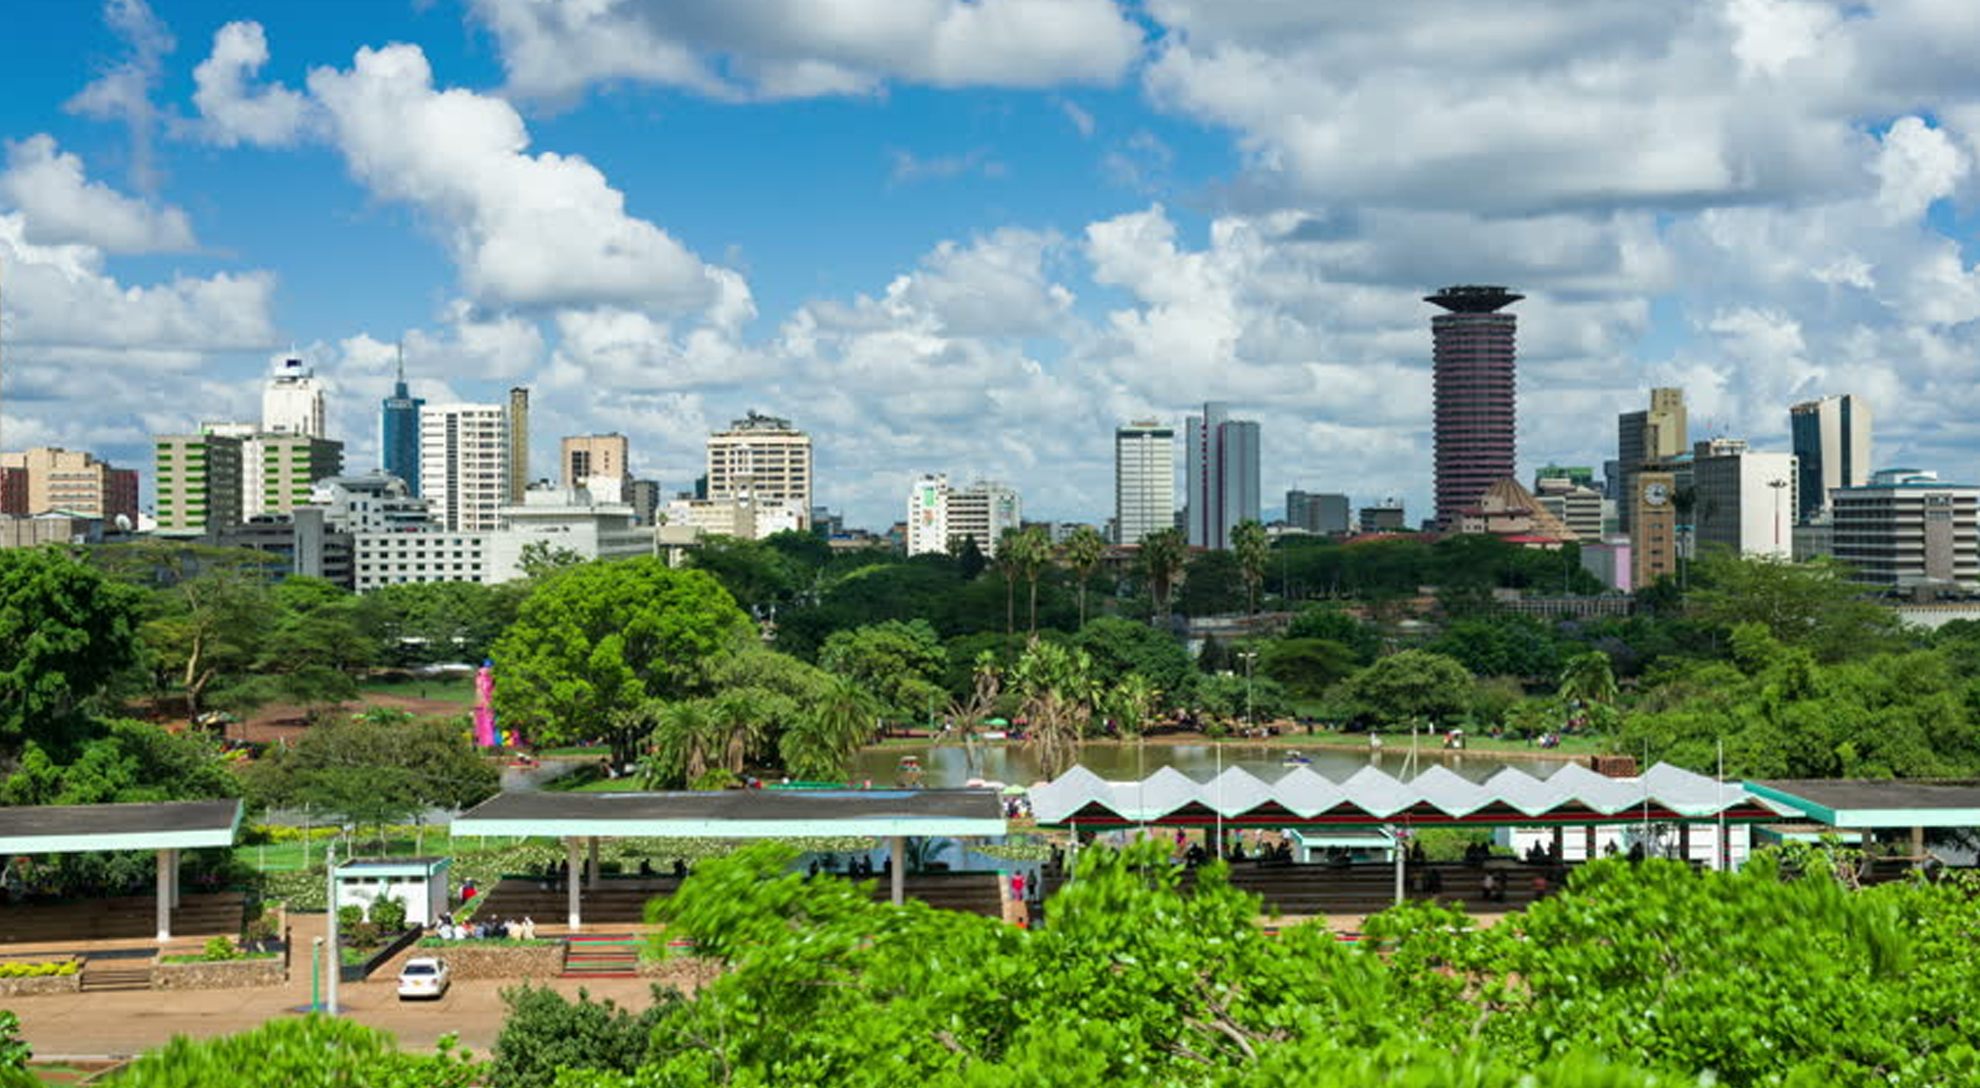 Day 1 : Nairobi, Kenya